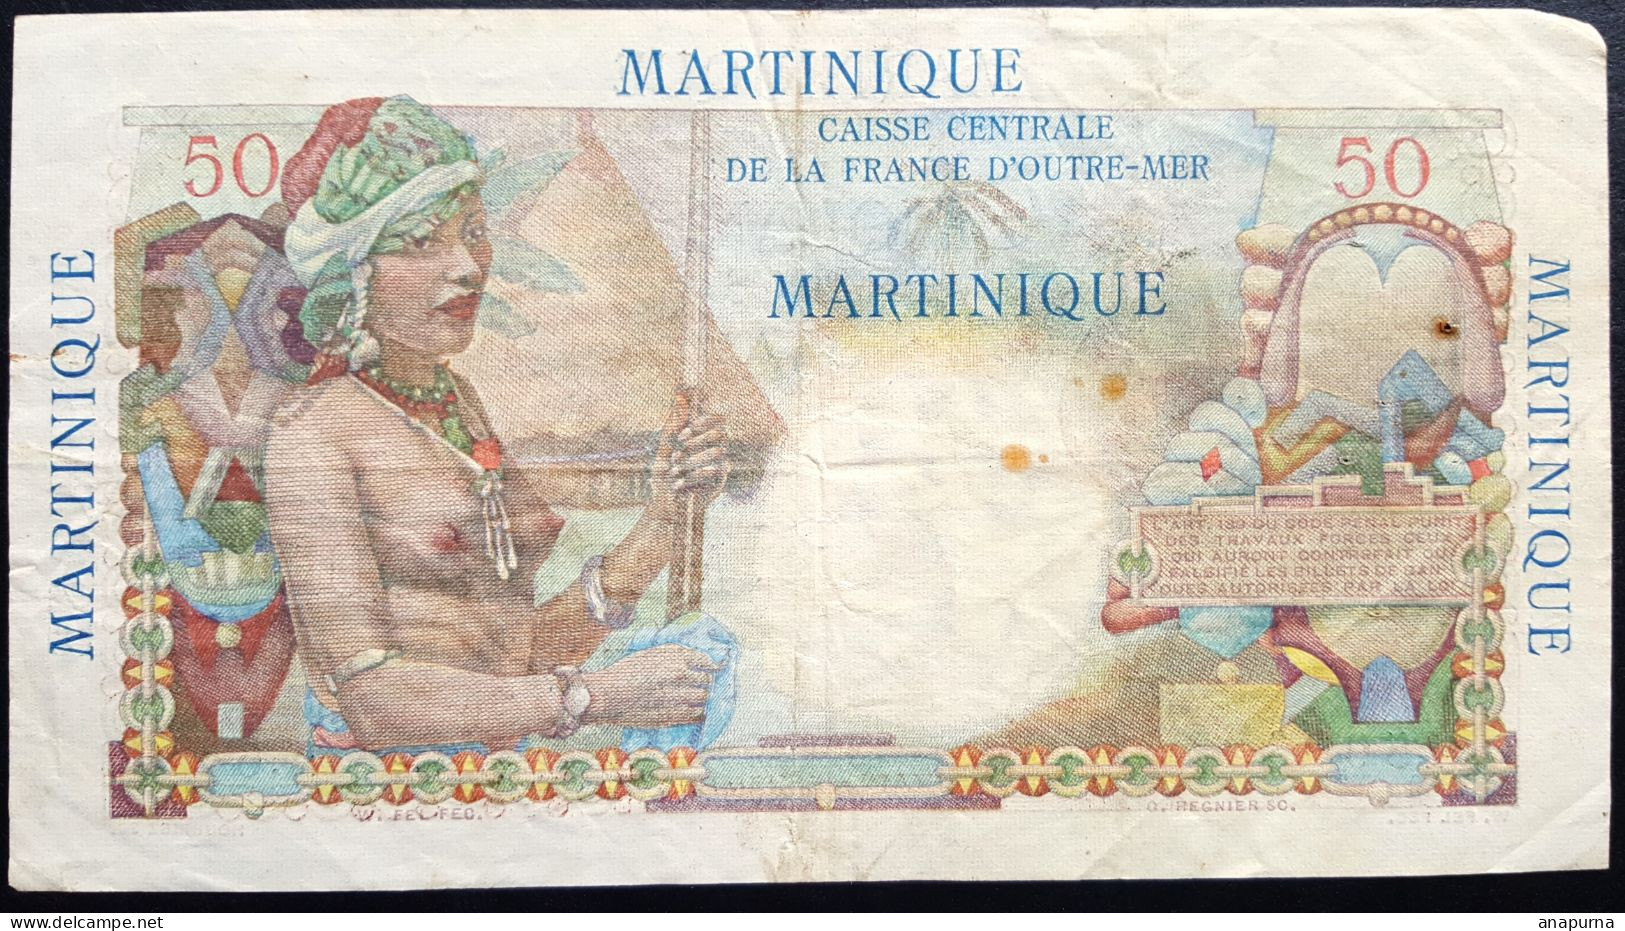 Billet 50 Francs Belain D'Esnambuc MARTINIQUE, Francs, Caisse Centrale De La France D'Outre-Mer, - Other - Oceania